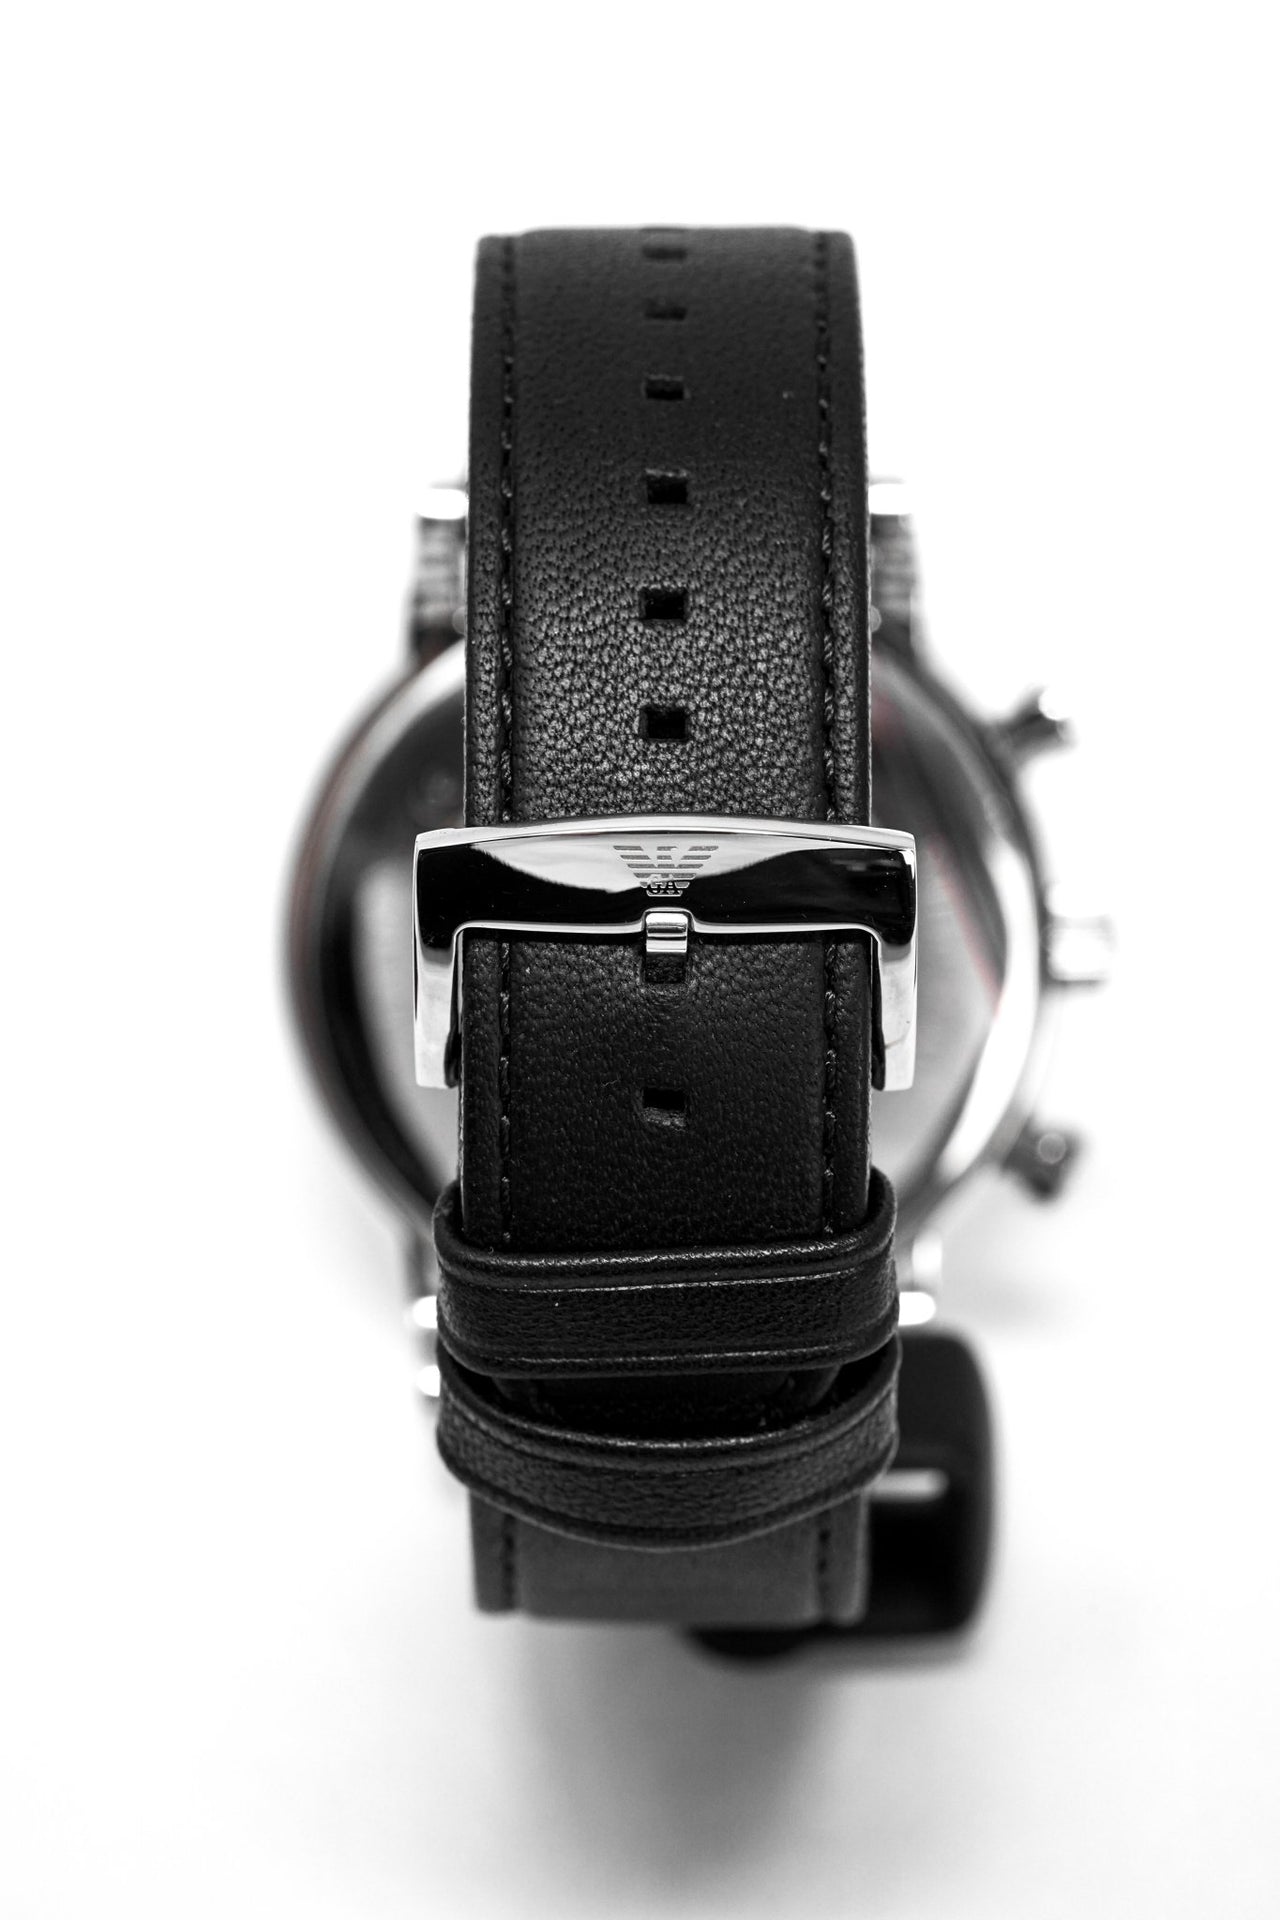 Emporio Armani Men's Luigi Chronograph Watch AR1828 – Watches & Crystals